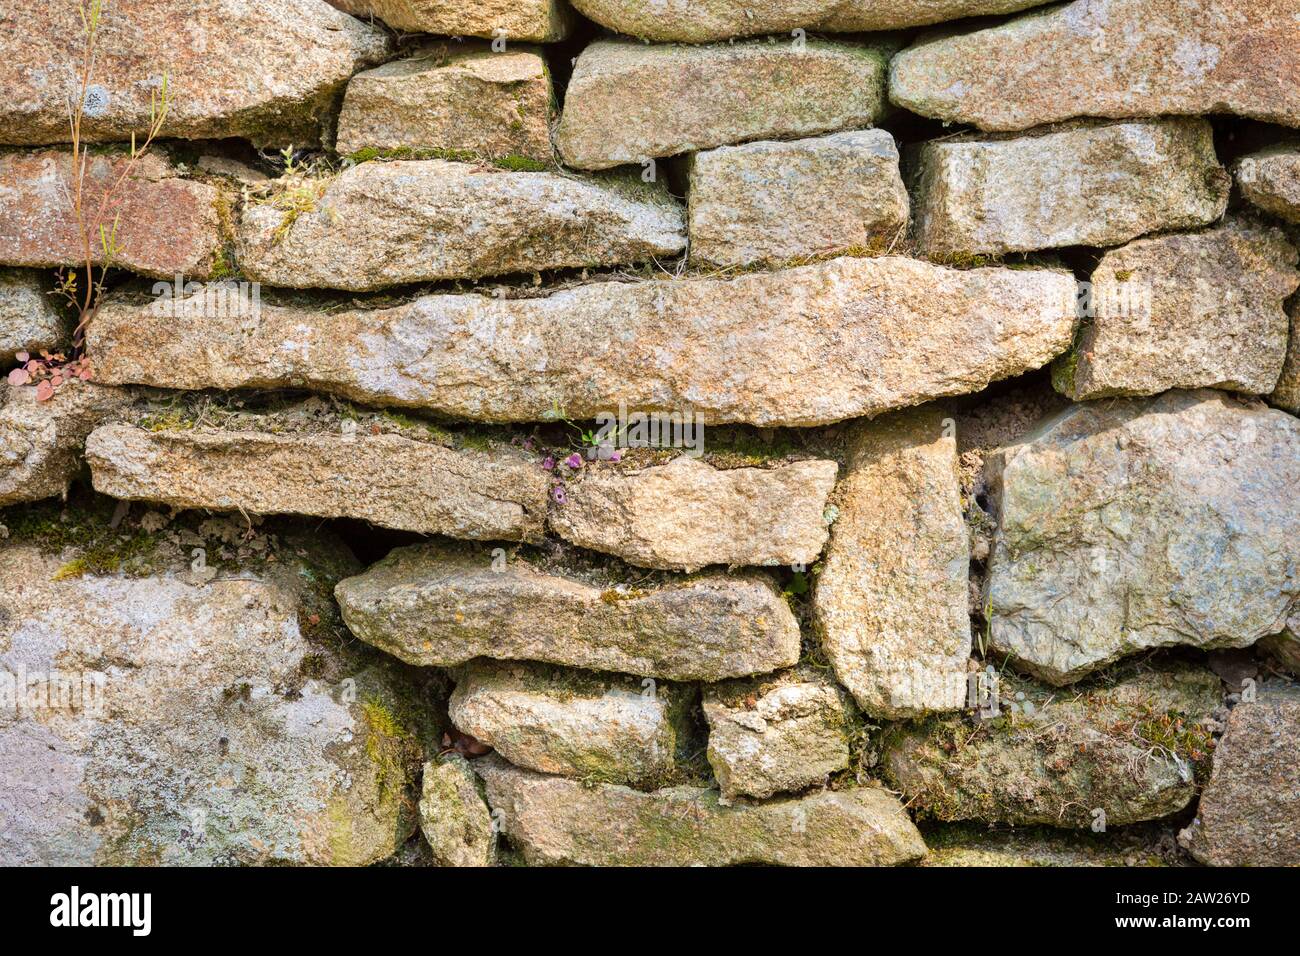 Dettagli pareti in pietra a secco, Inghilterra, Regno Unito Foto Stock